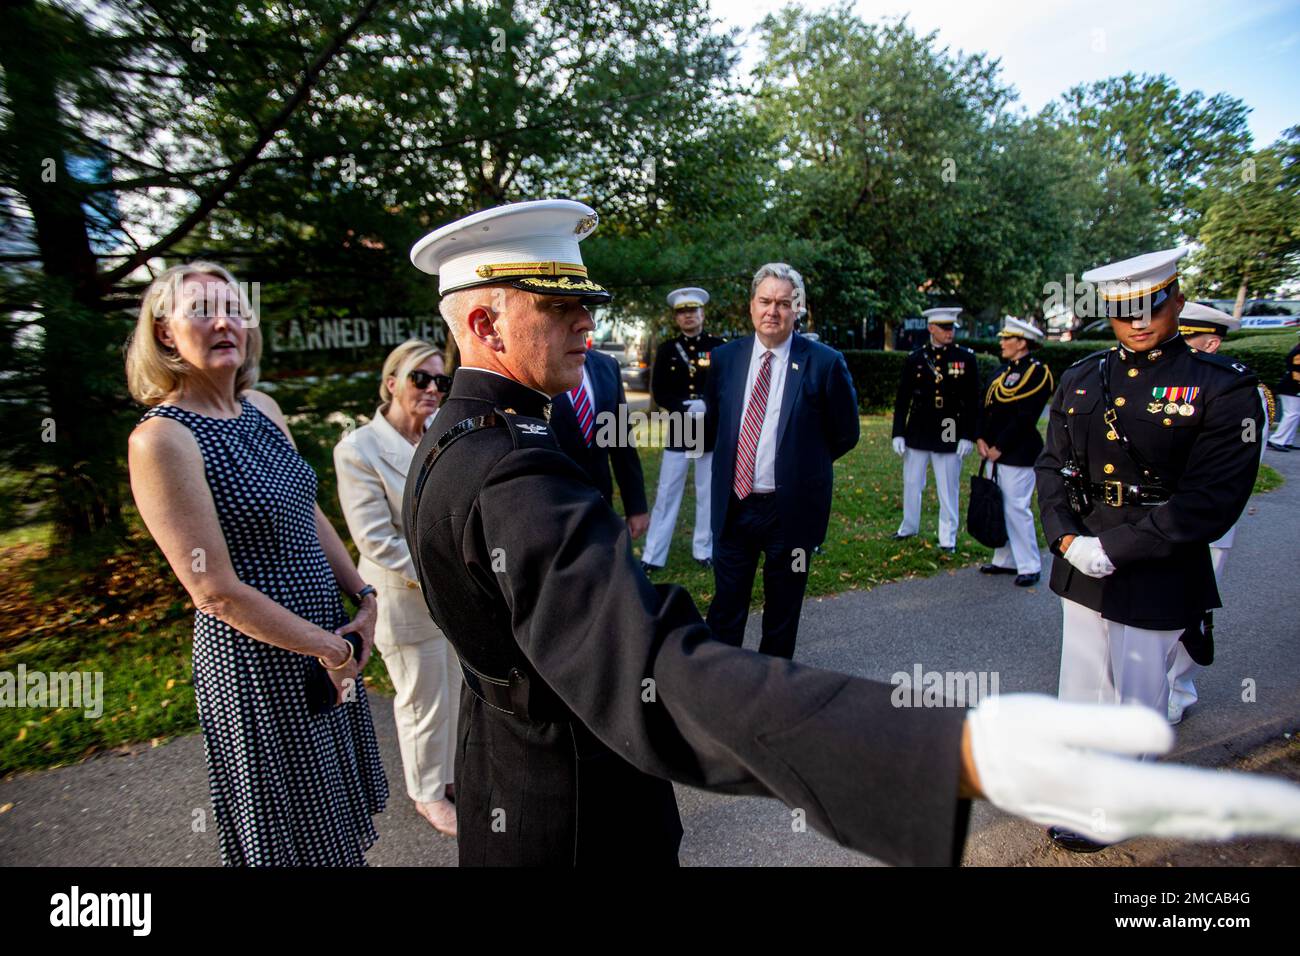 Le colonel Robert A. Sucher, commandant de la caserne marine de Washington,  présente un briefing à l'invité d'honneur et au responsable de l'accueil  avant une parade au coucher du soleil au Monument